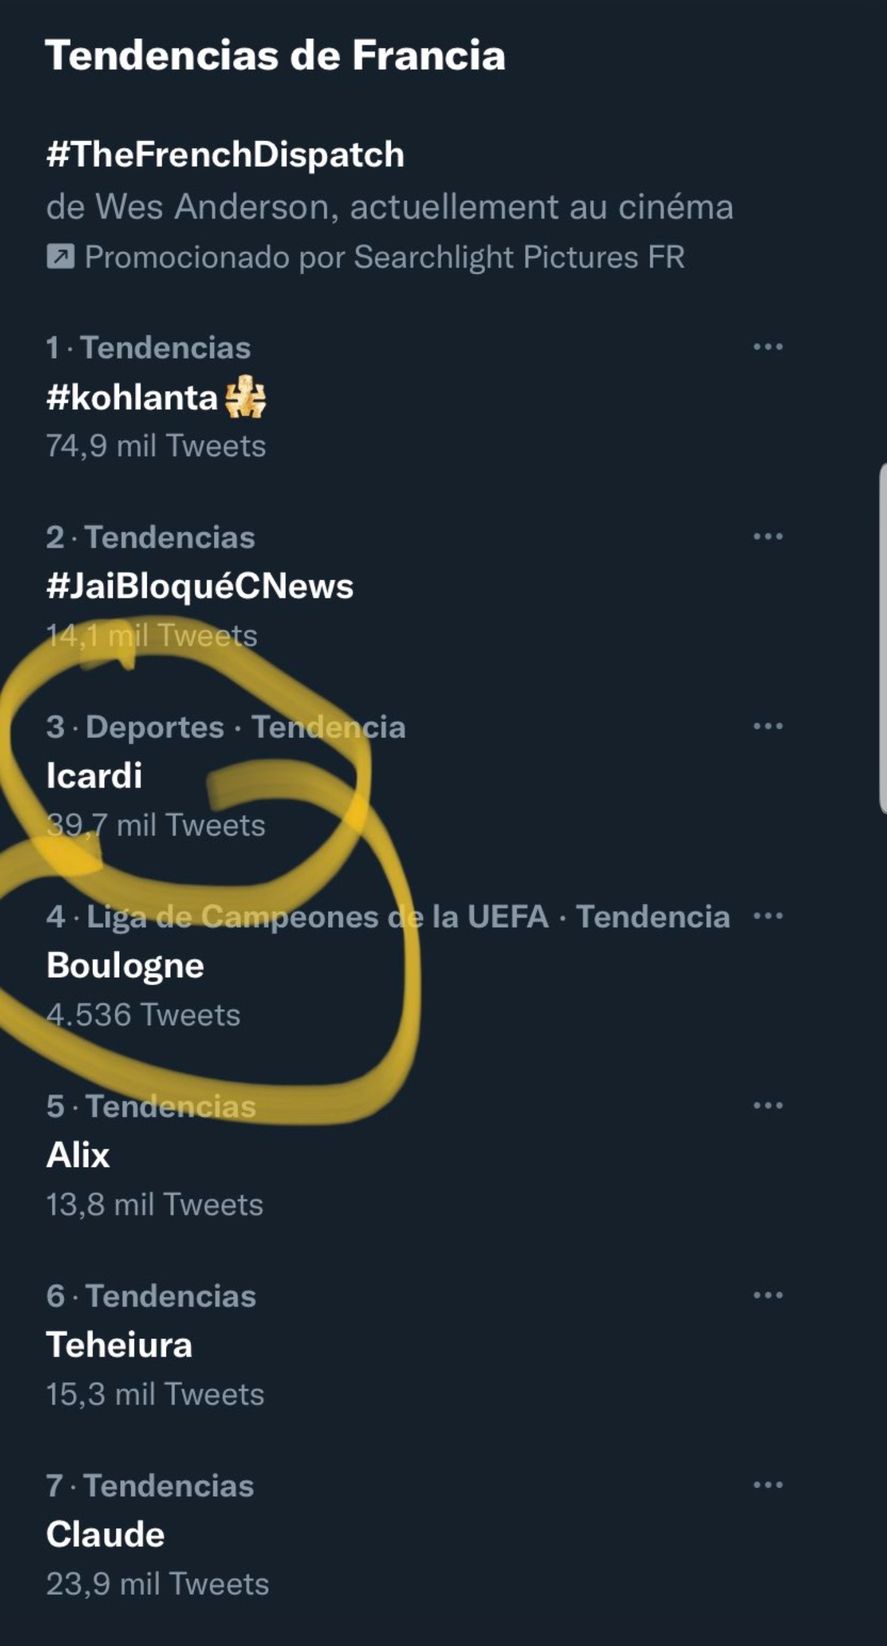 Entre las tendencias anoche en Twitter de Francia estaban Icardi y Boulogne